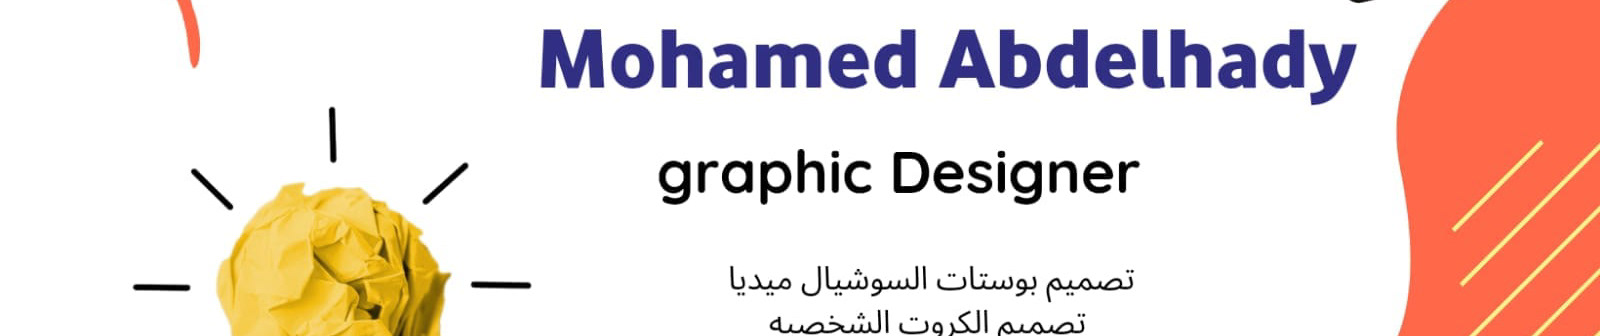 Mohammed Abd Elhady's profile banner